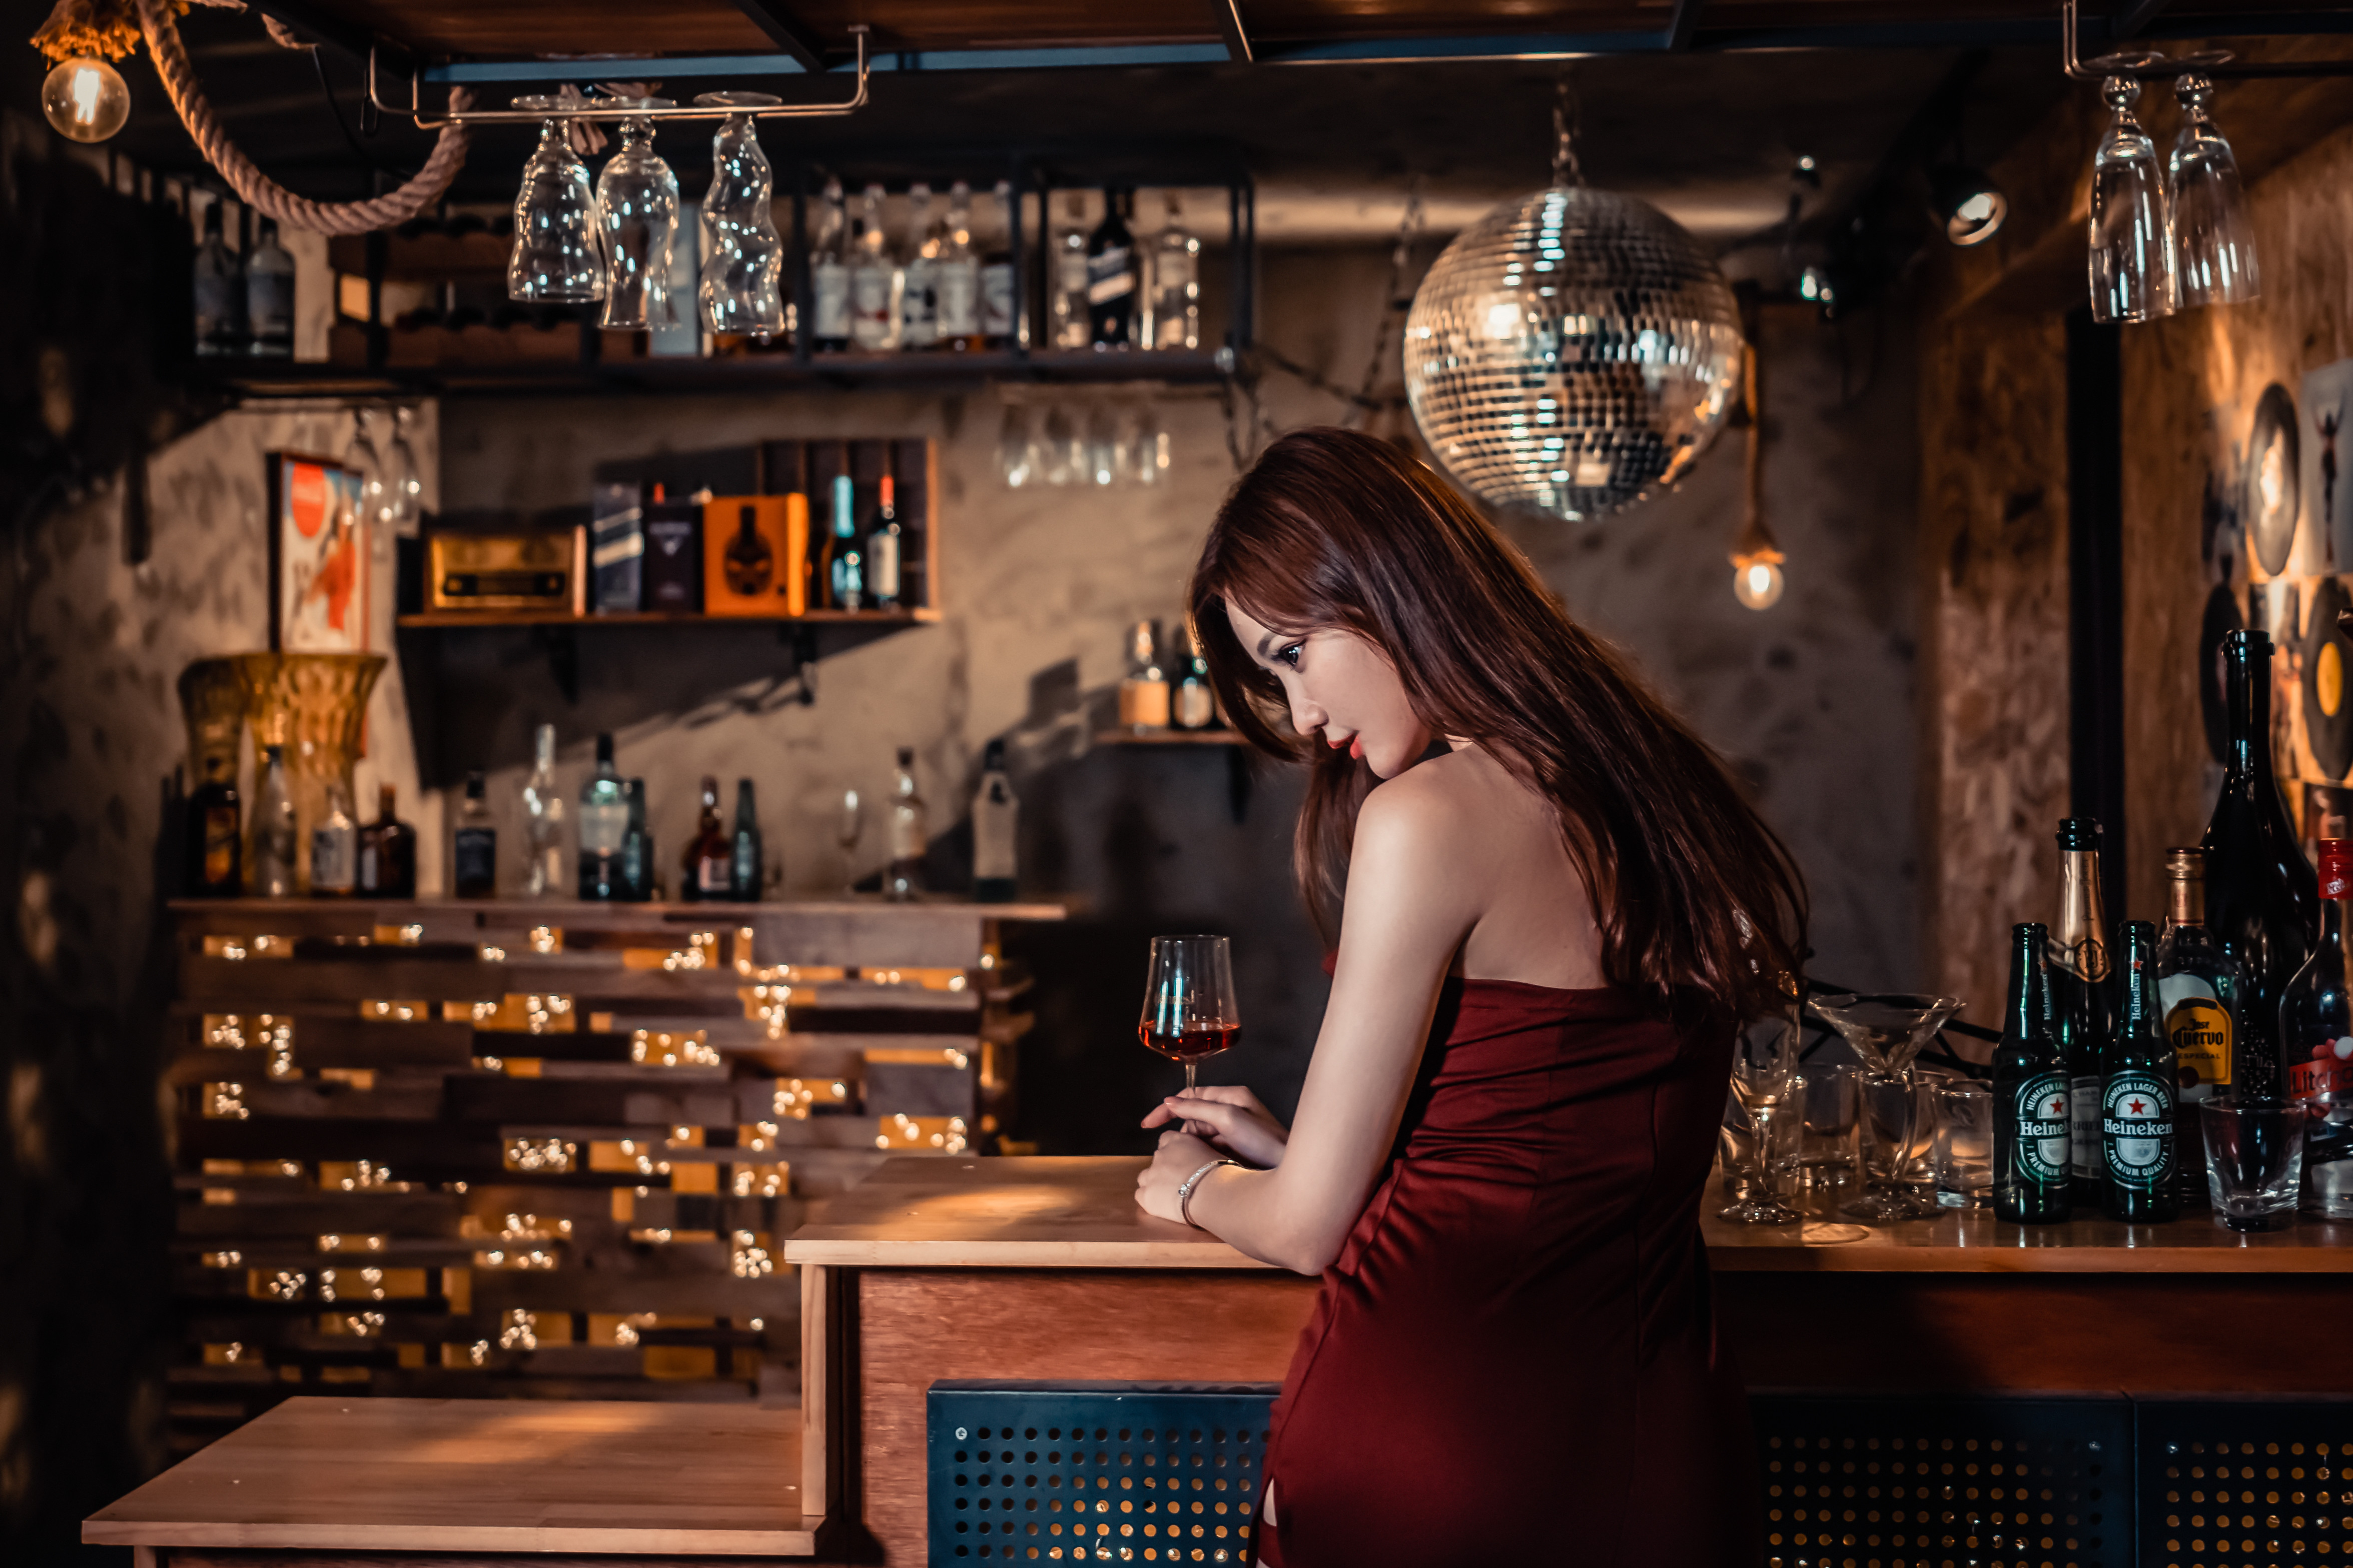 Asian Model Women Long Hair Brunette Dress Table Bottles Bracelets Drinking Glass 4703x3135